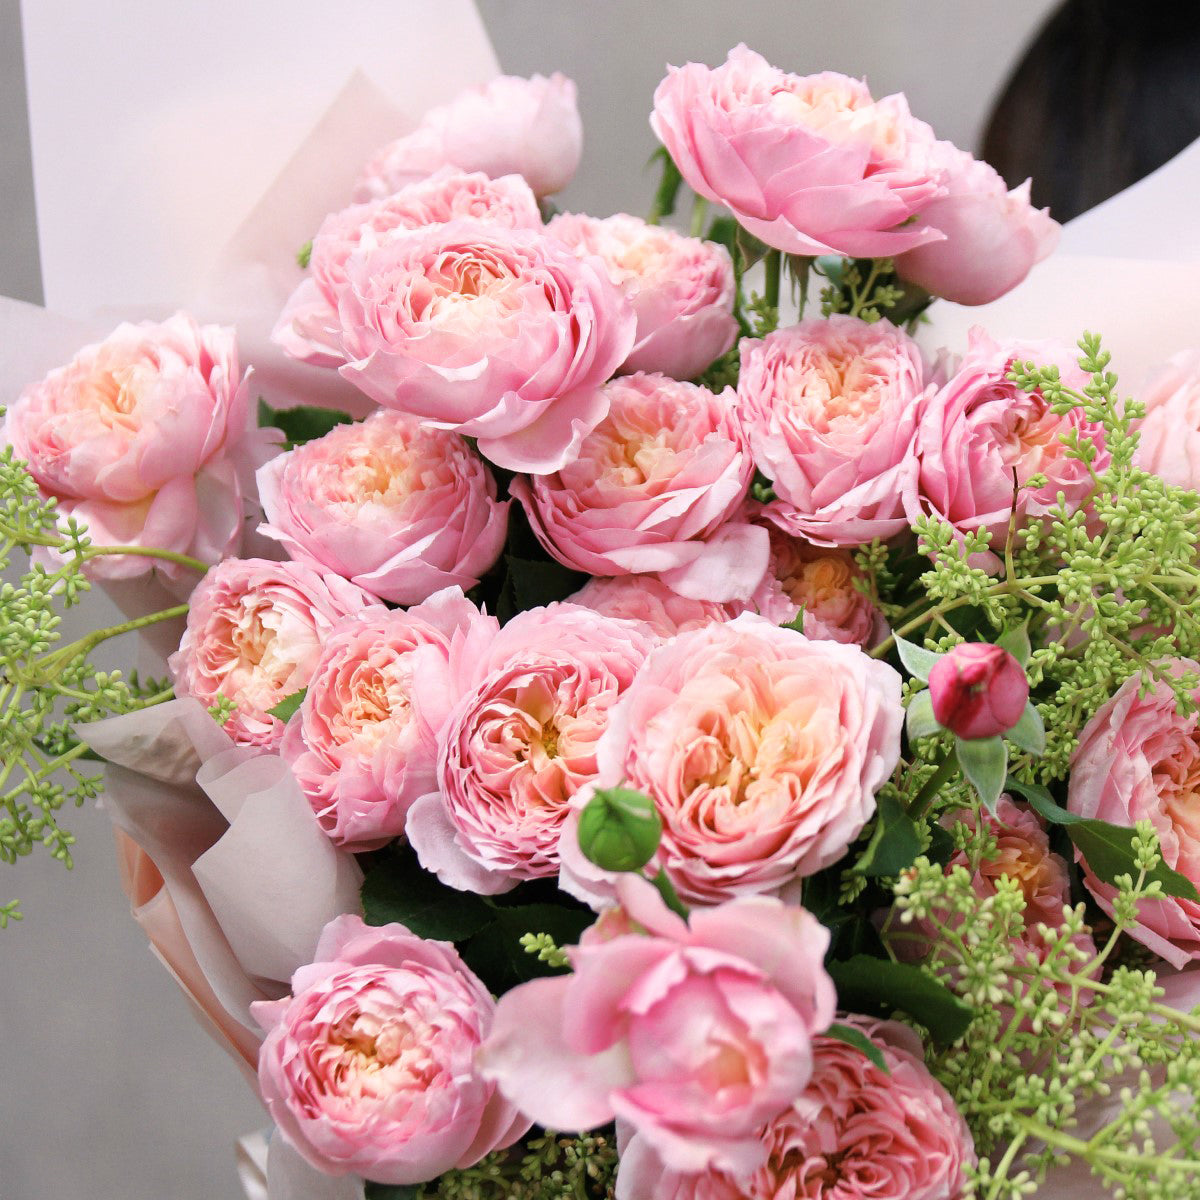 粉紅庭園小玫瑰花束 Pink garden spray rose bouquet